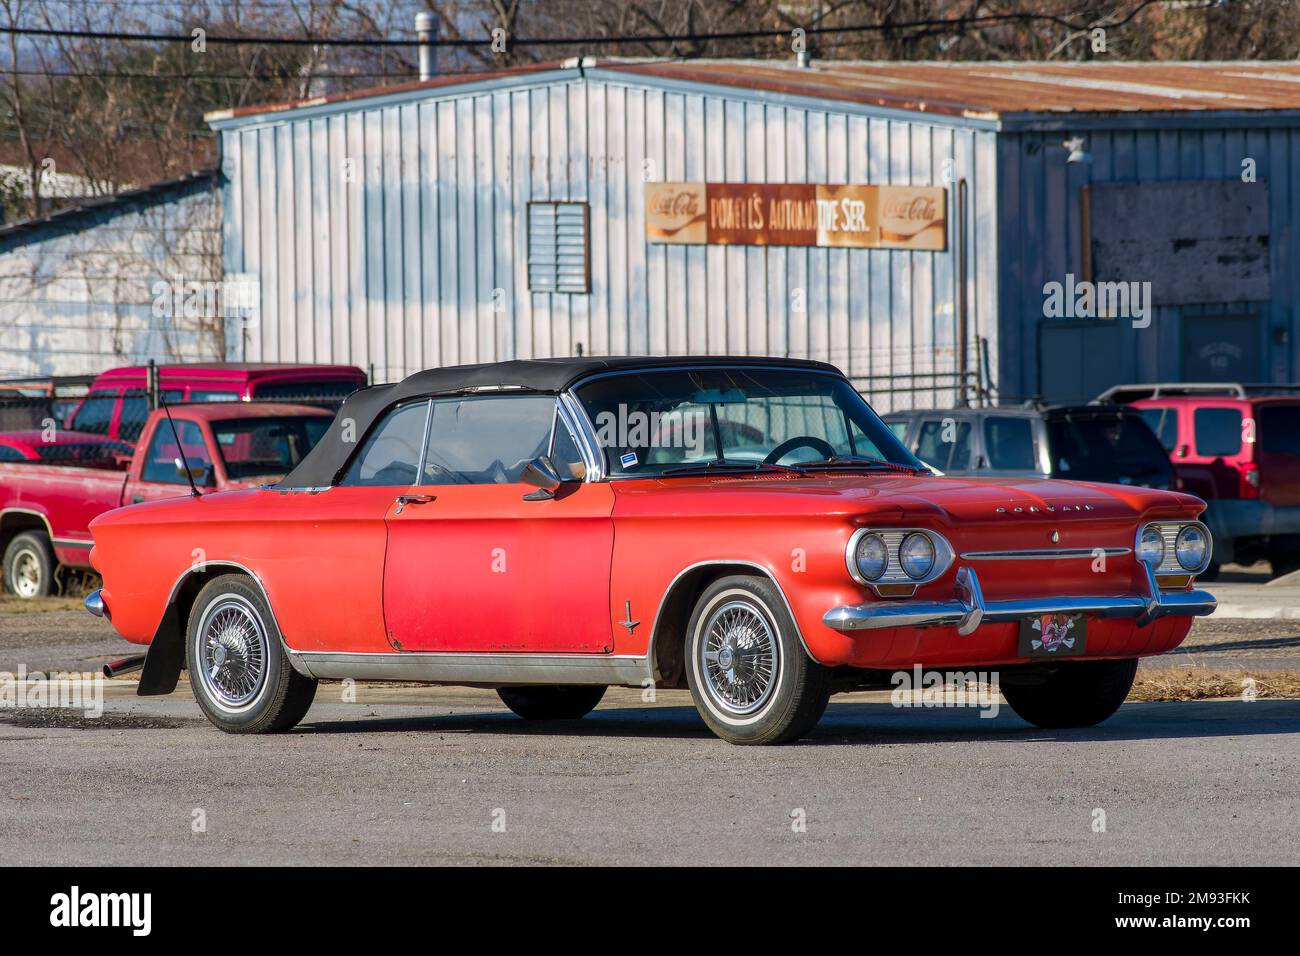 Oldtimer-Cabriolet Chevrolet Corvair 900 Monza Spyder, ein luftgekühlter Heckmotor oder ein Auto, das in Montgomery, Alabama, USA, geparkt ist, 1963 Rot. Stockfoto